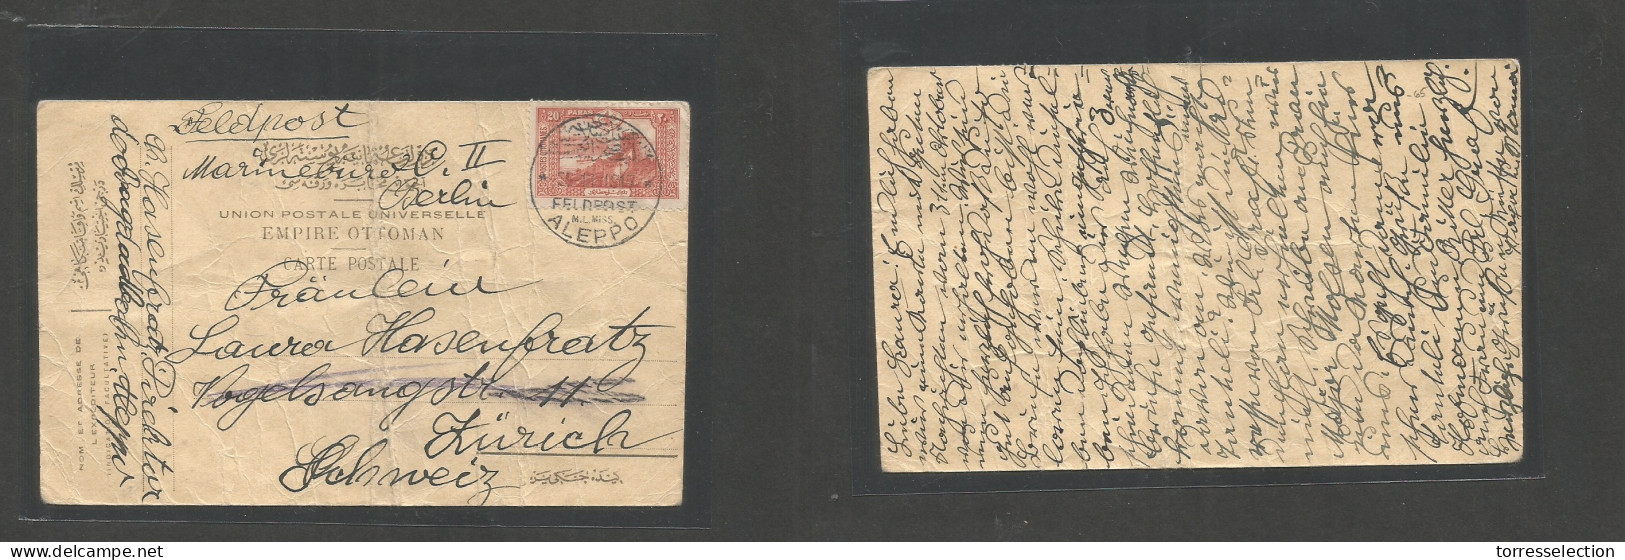 SYRIA. 1917 (11 Sept) Feldpost Mail. Aleppo - Switzerland, Zurich. Fkd Stampless Card, Cds Strike Condition. Fine WWI It - Siria